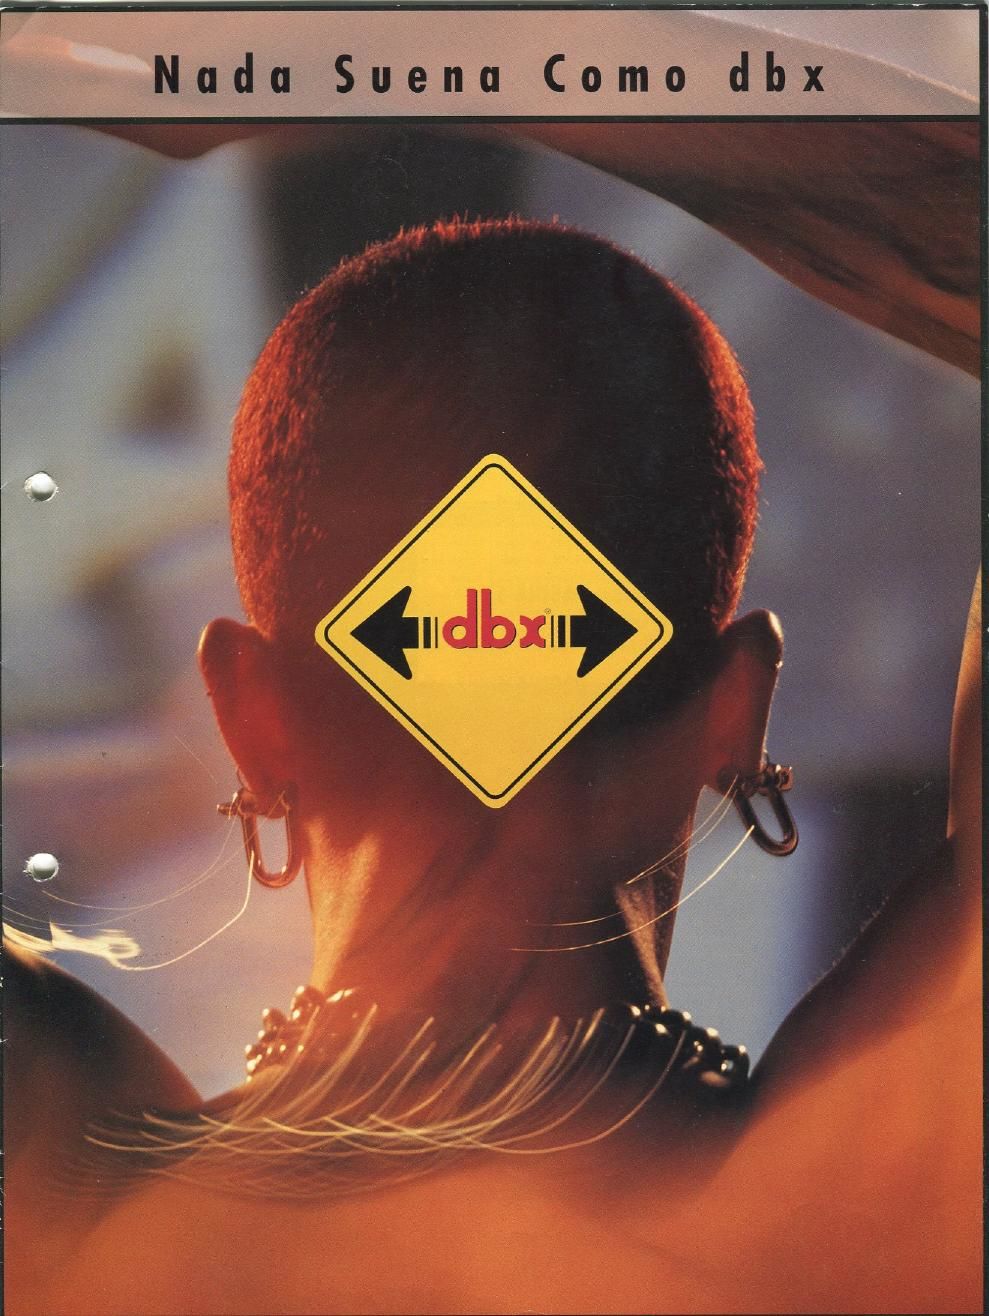 dbx 1992